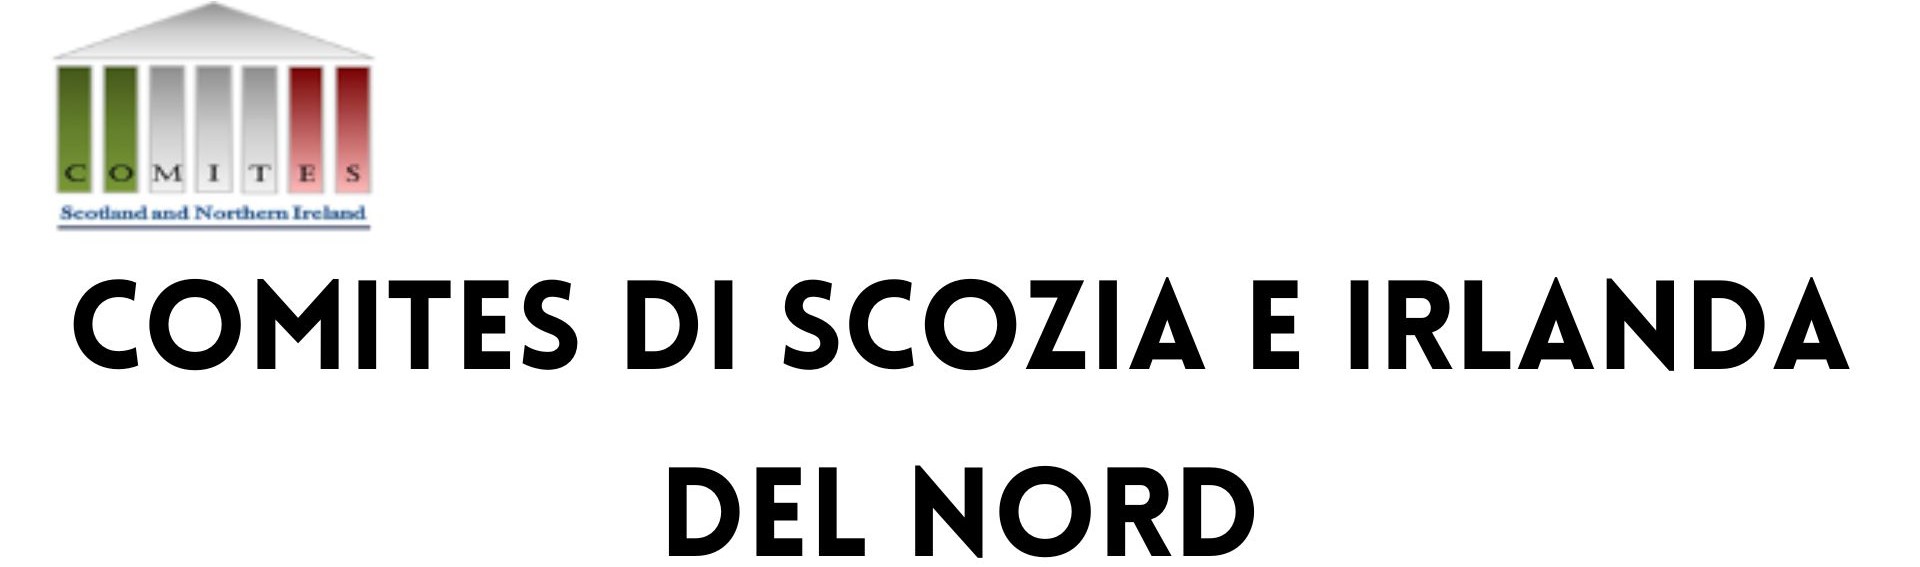 Logo Comites Scozia e Irlanda del Nord